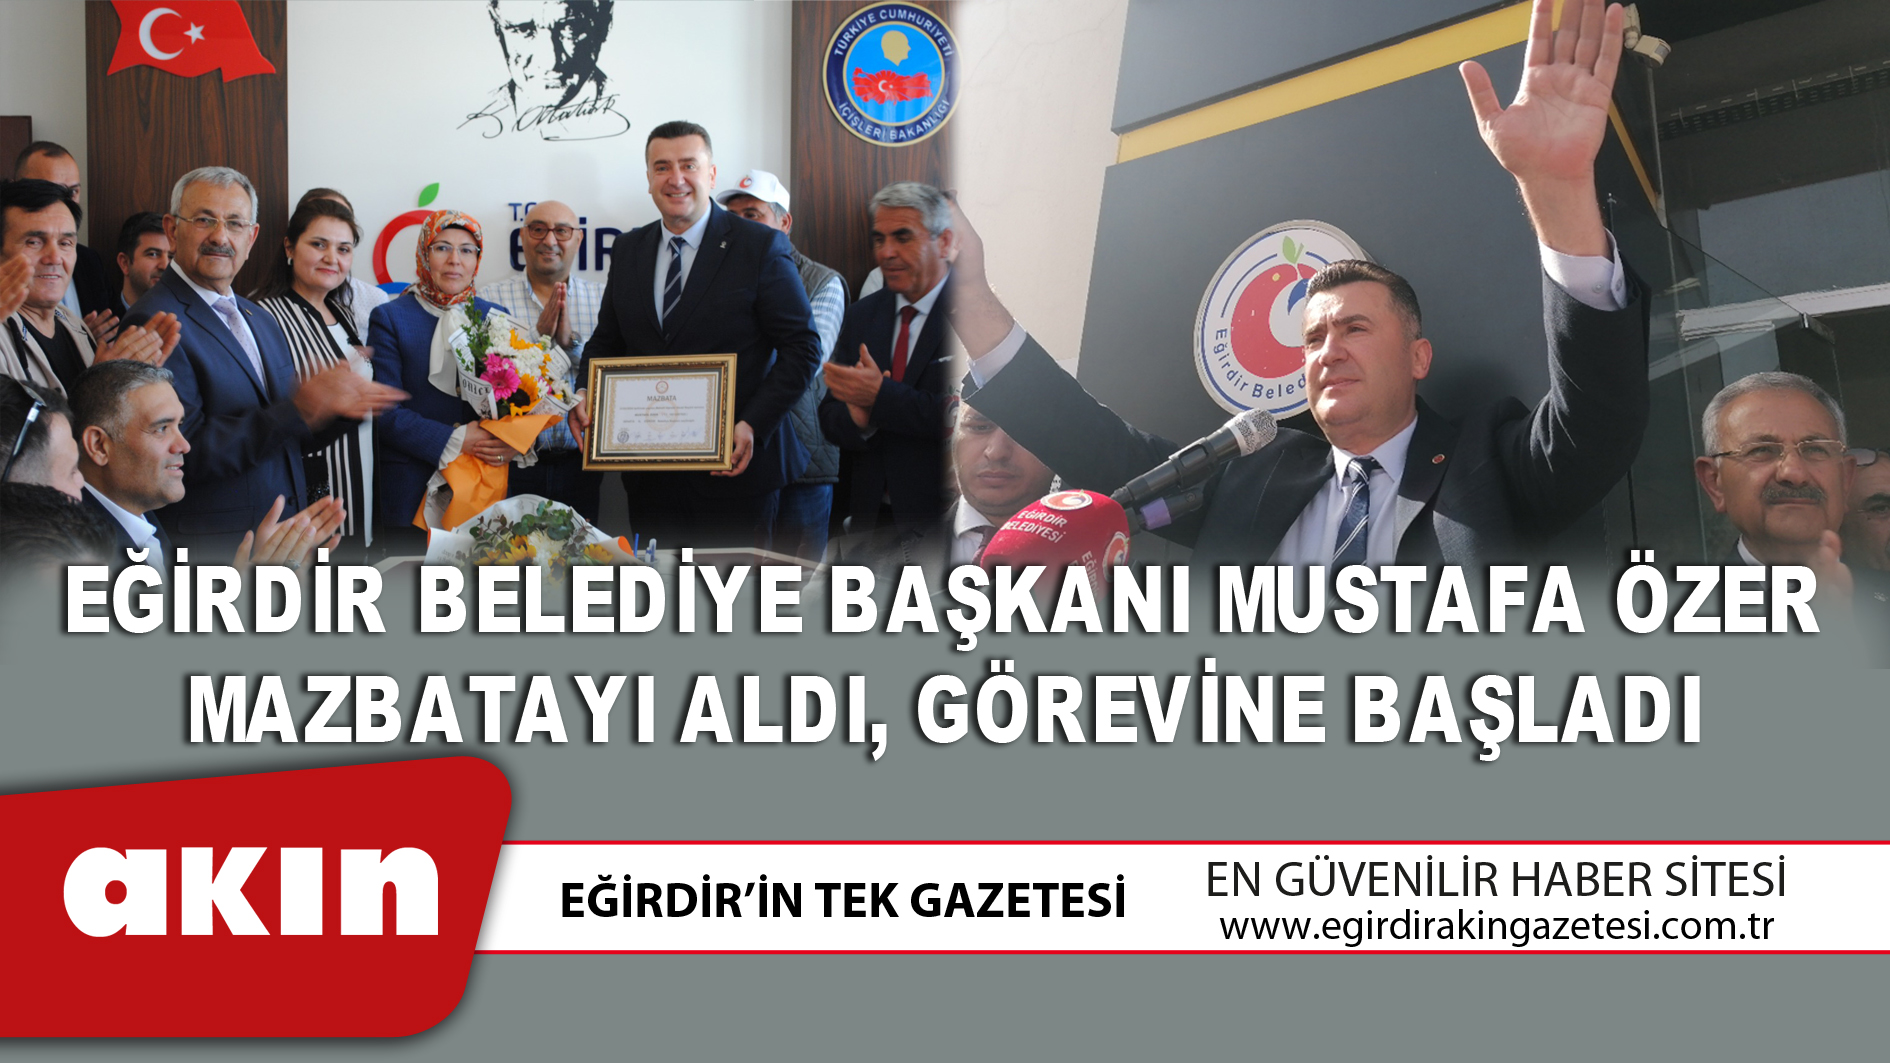 Eğirdir Belediye Başkanı Mustafa Özer Mazbatayı Aldı, Görevine Başladı